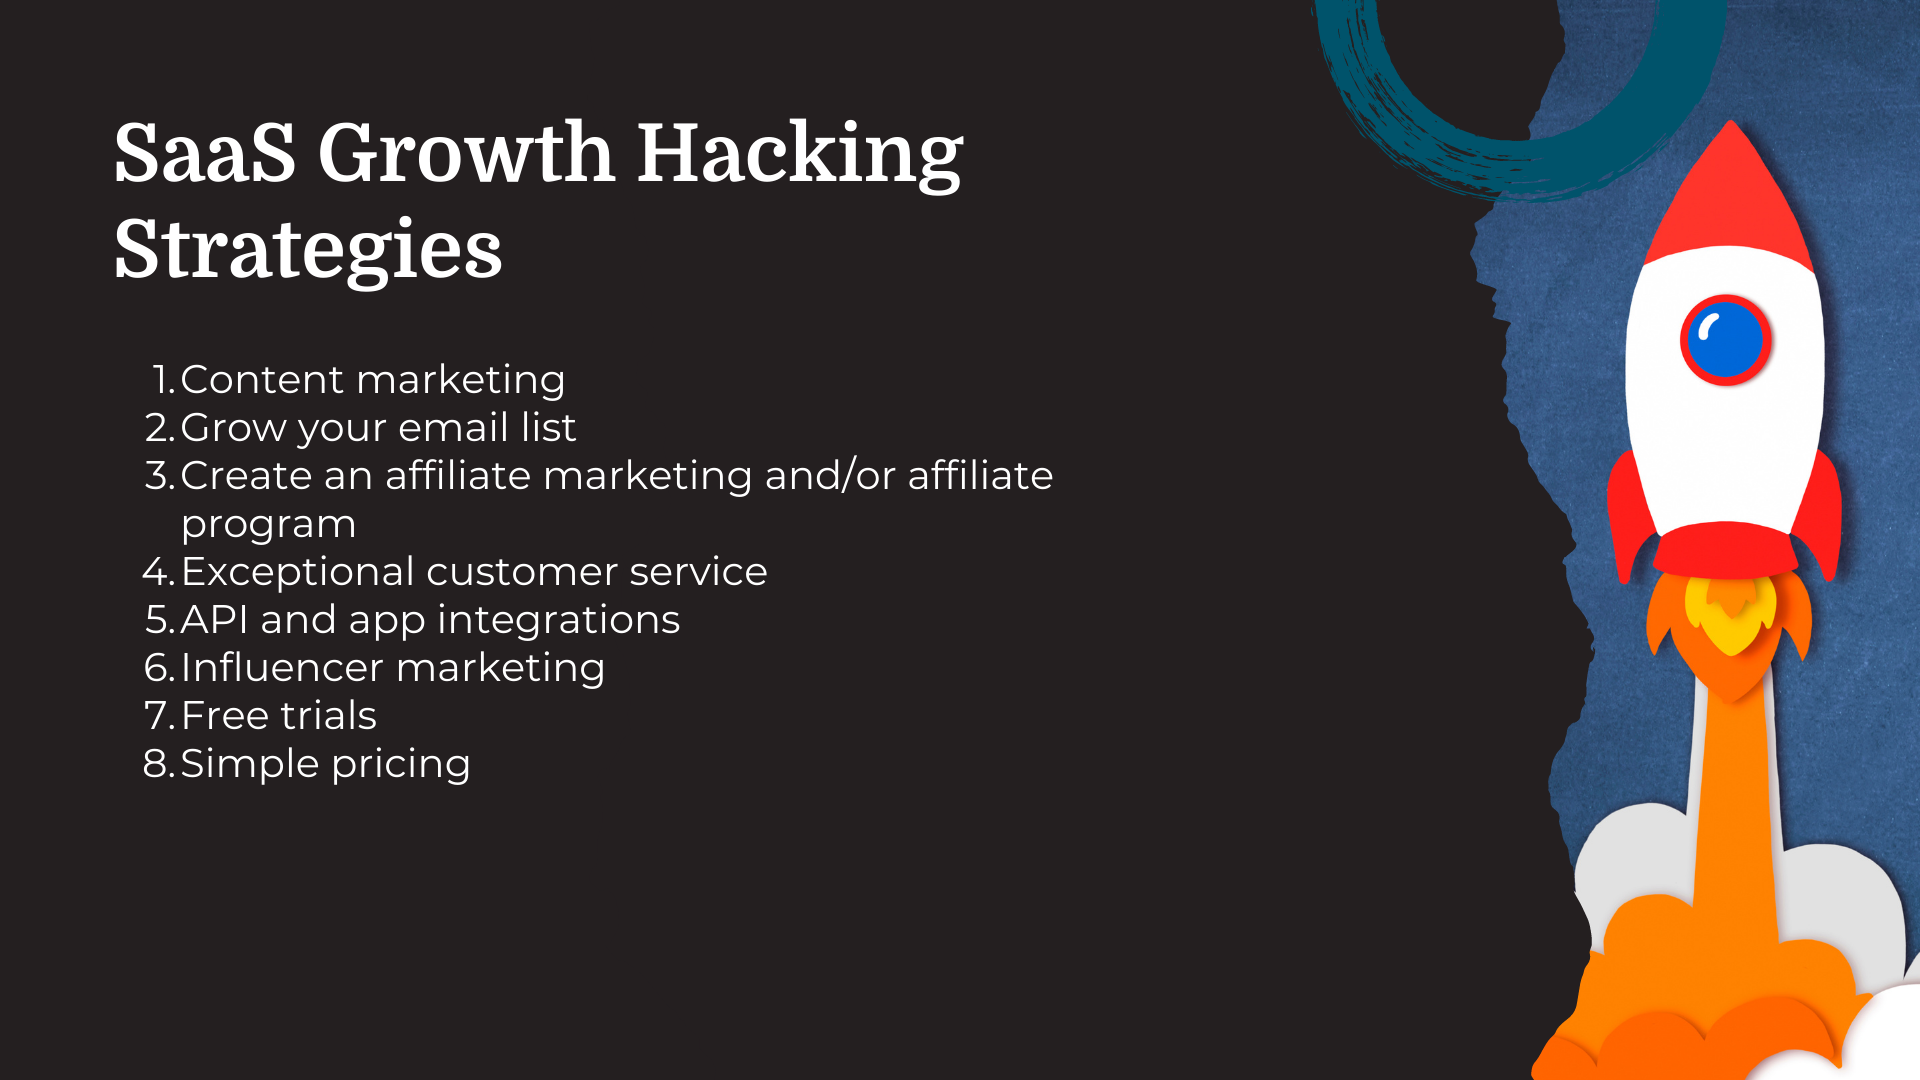 saas growth hacking strategies list